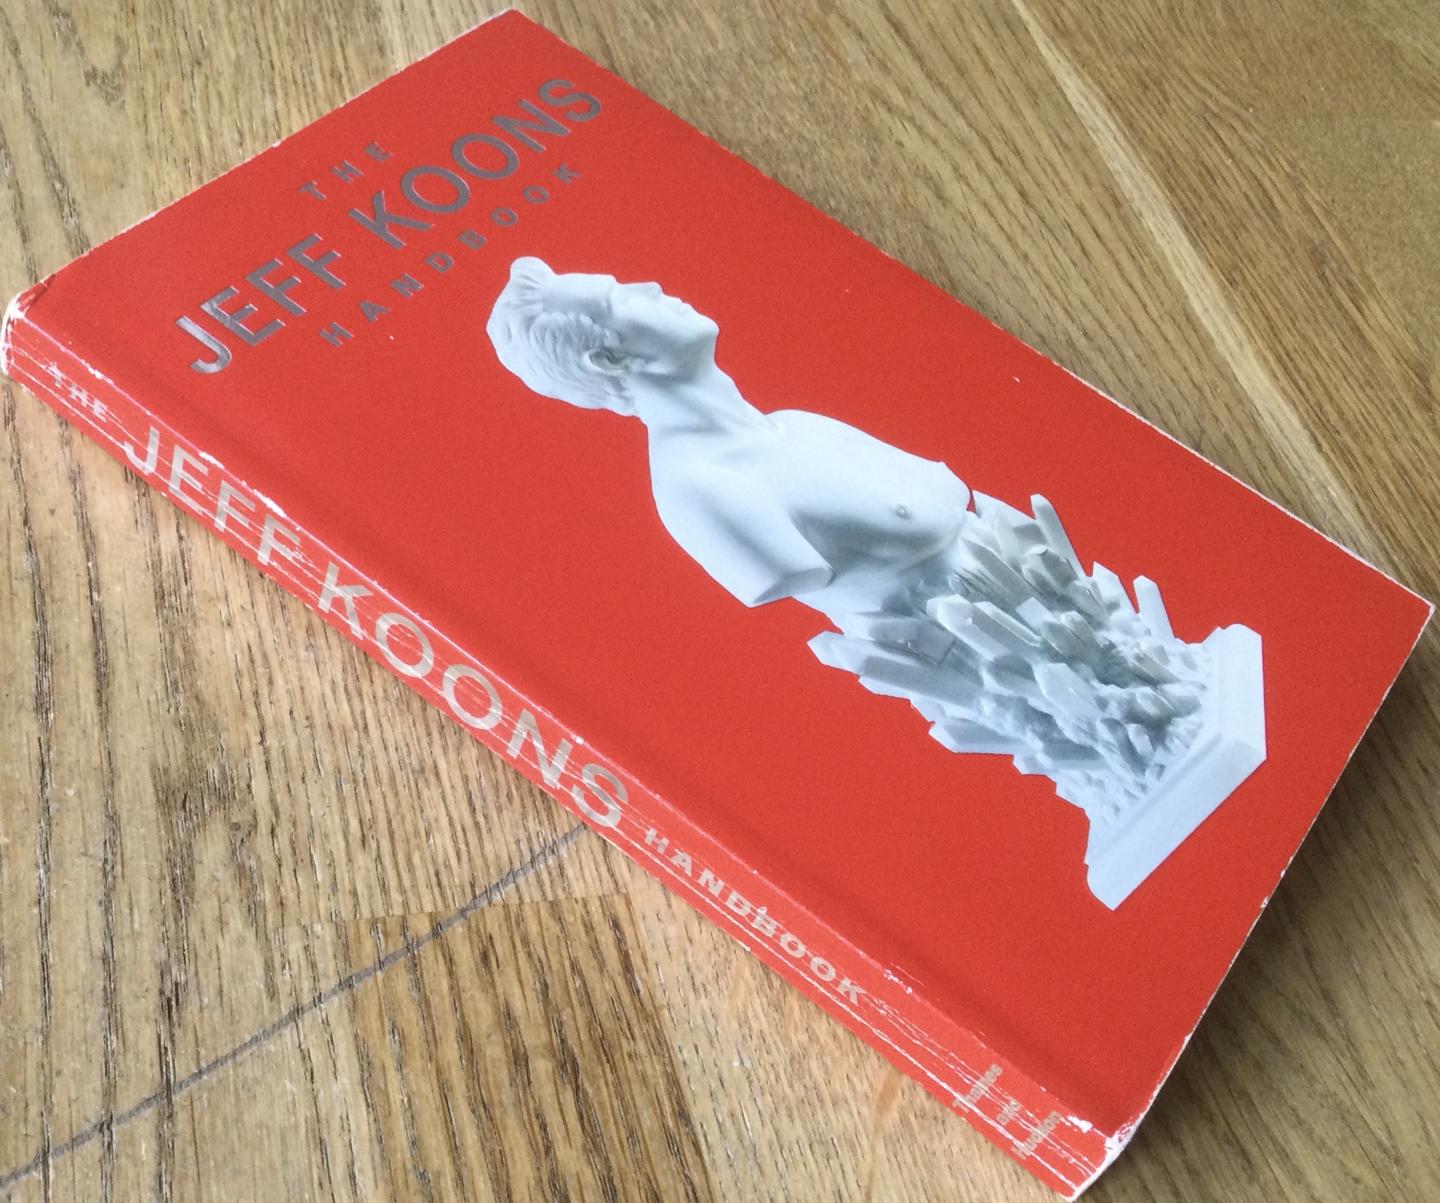 Koons, Jeff - The Jeff Koons Handbook